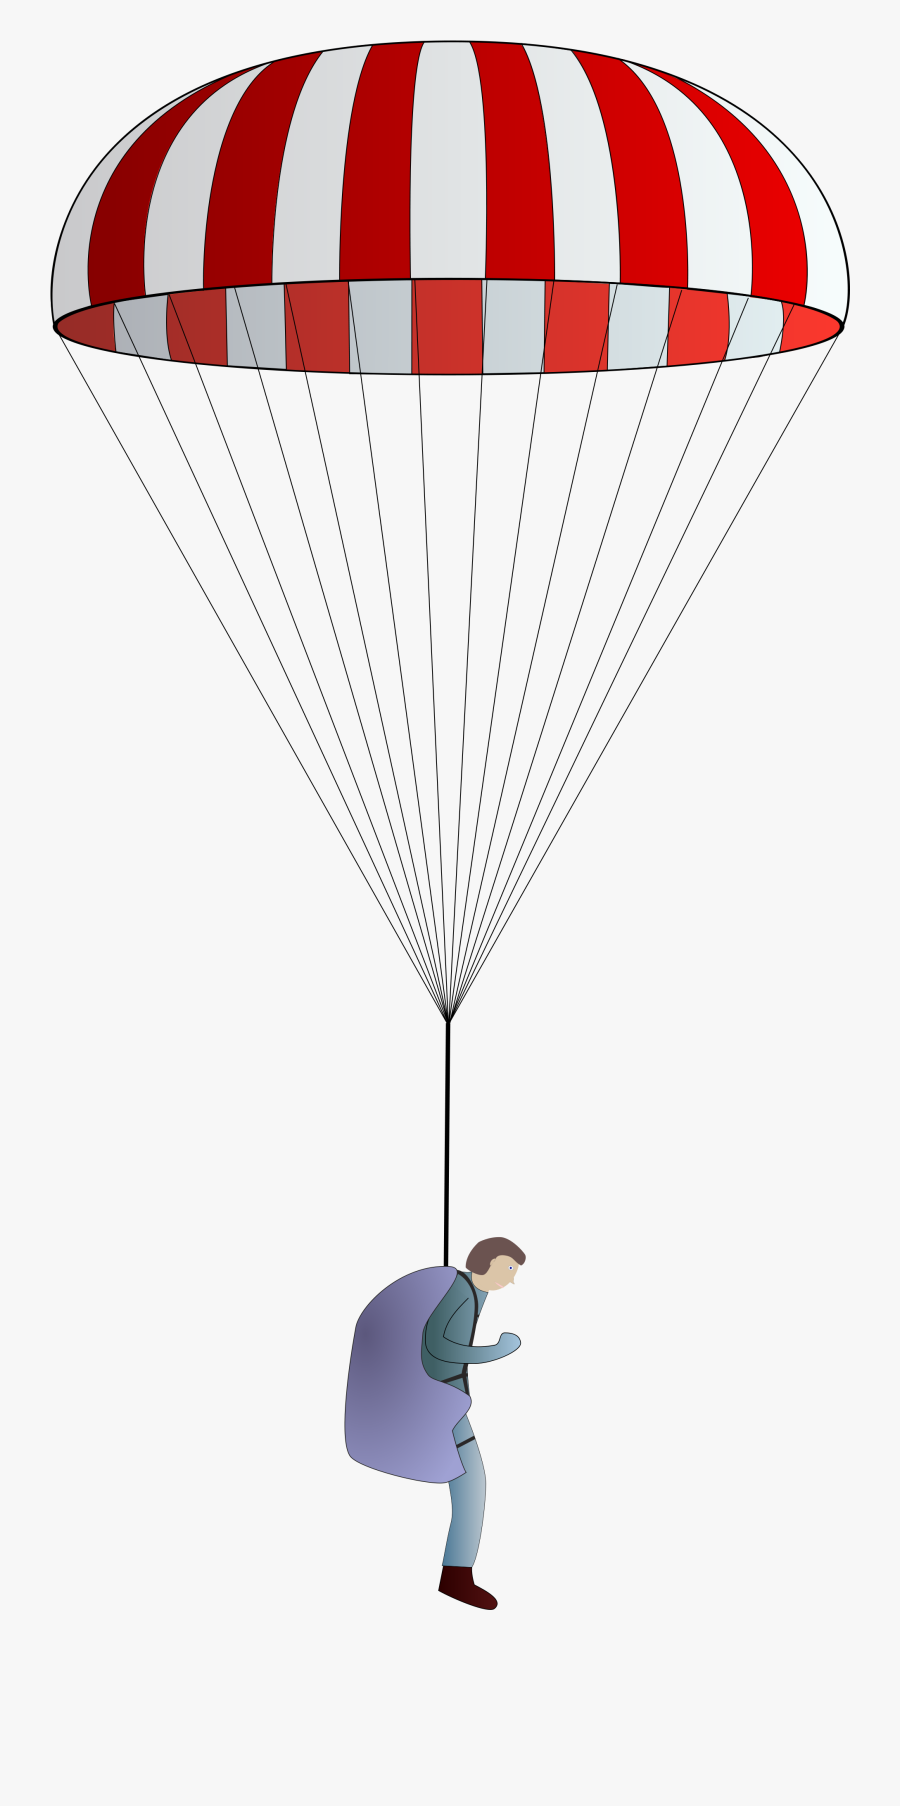 Hd Png Transparent Images - Open Parachute Png, Transparent Clipart